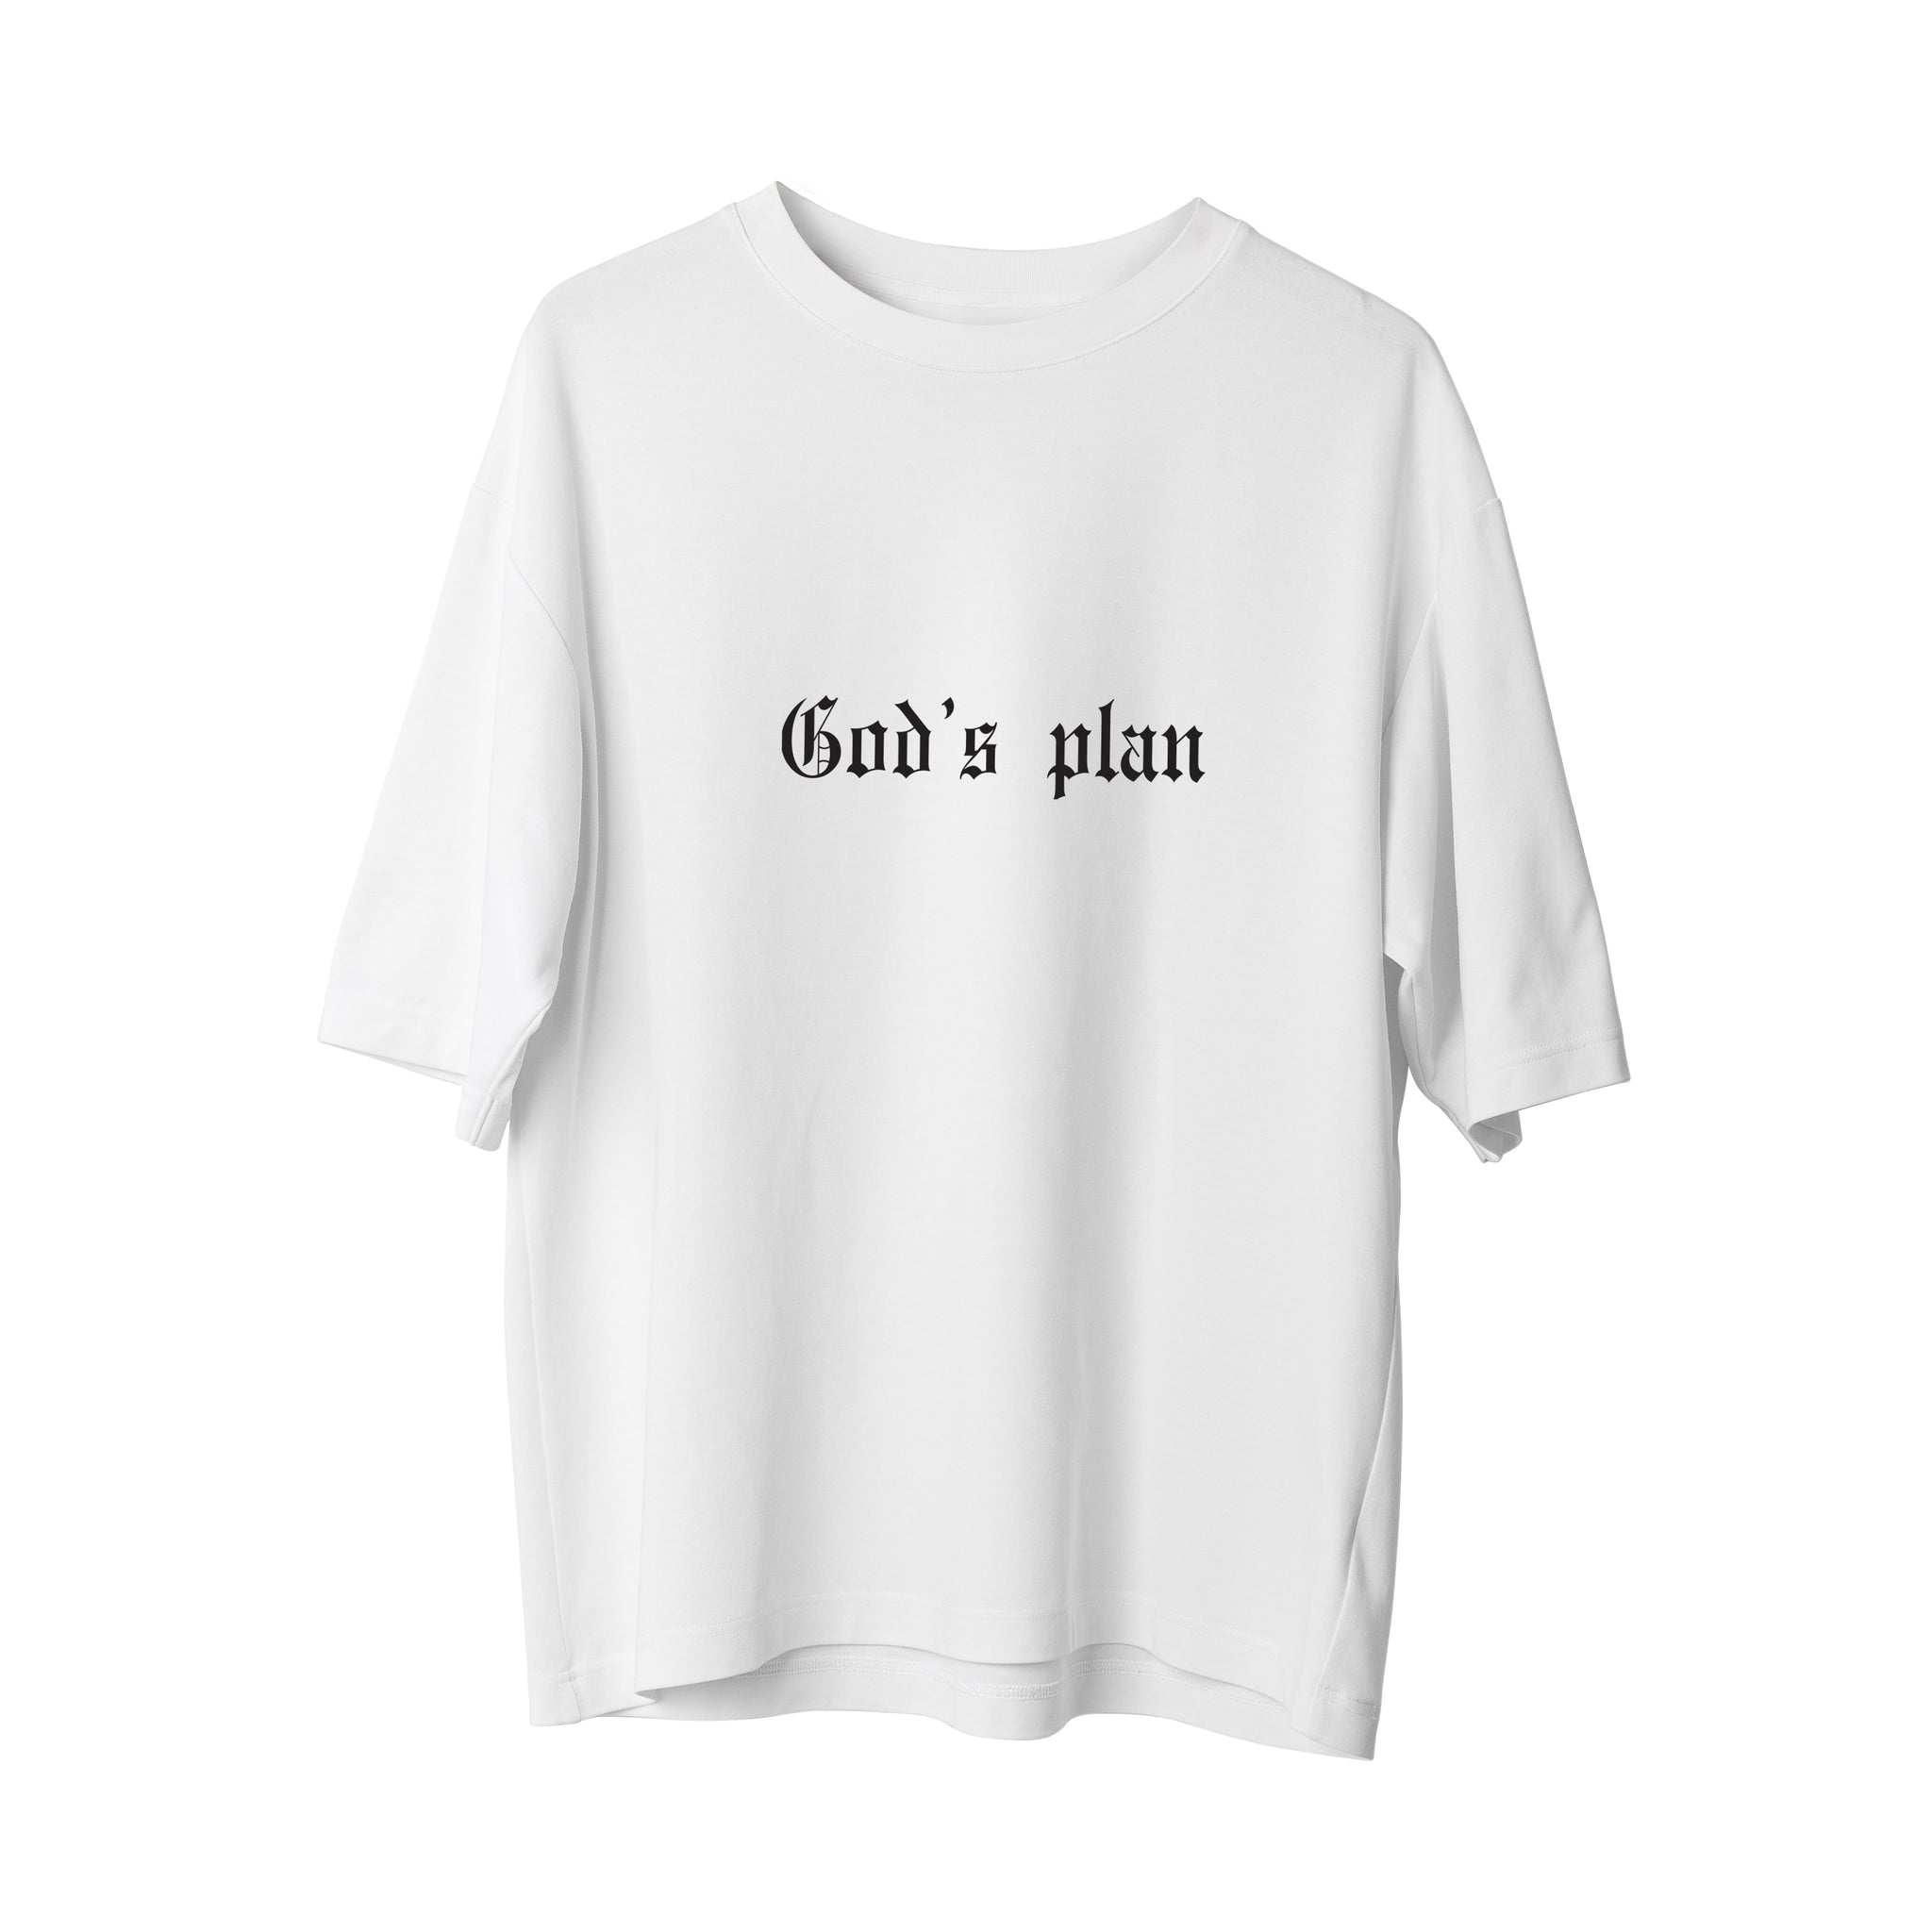 Gods Plan - Oversize T-Shirt